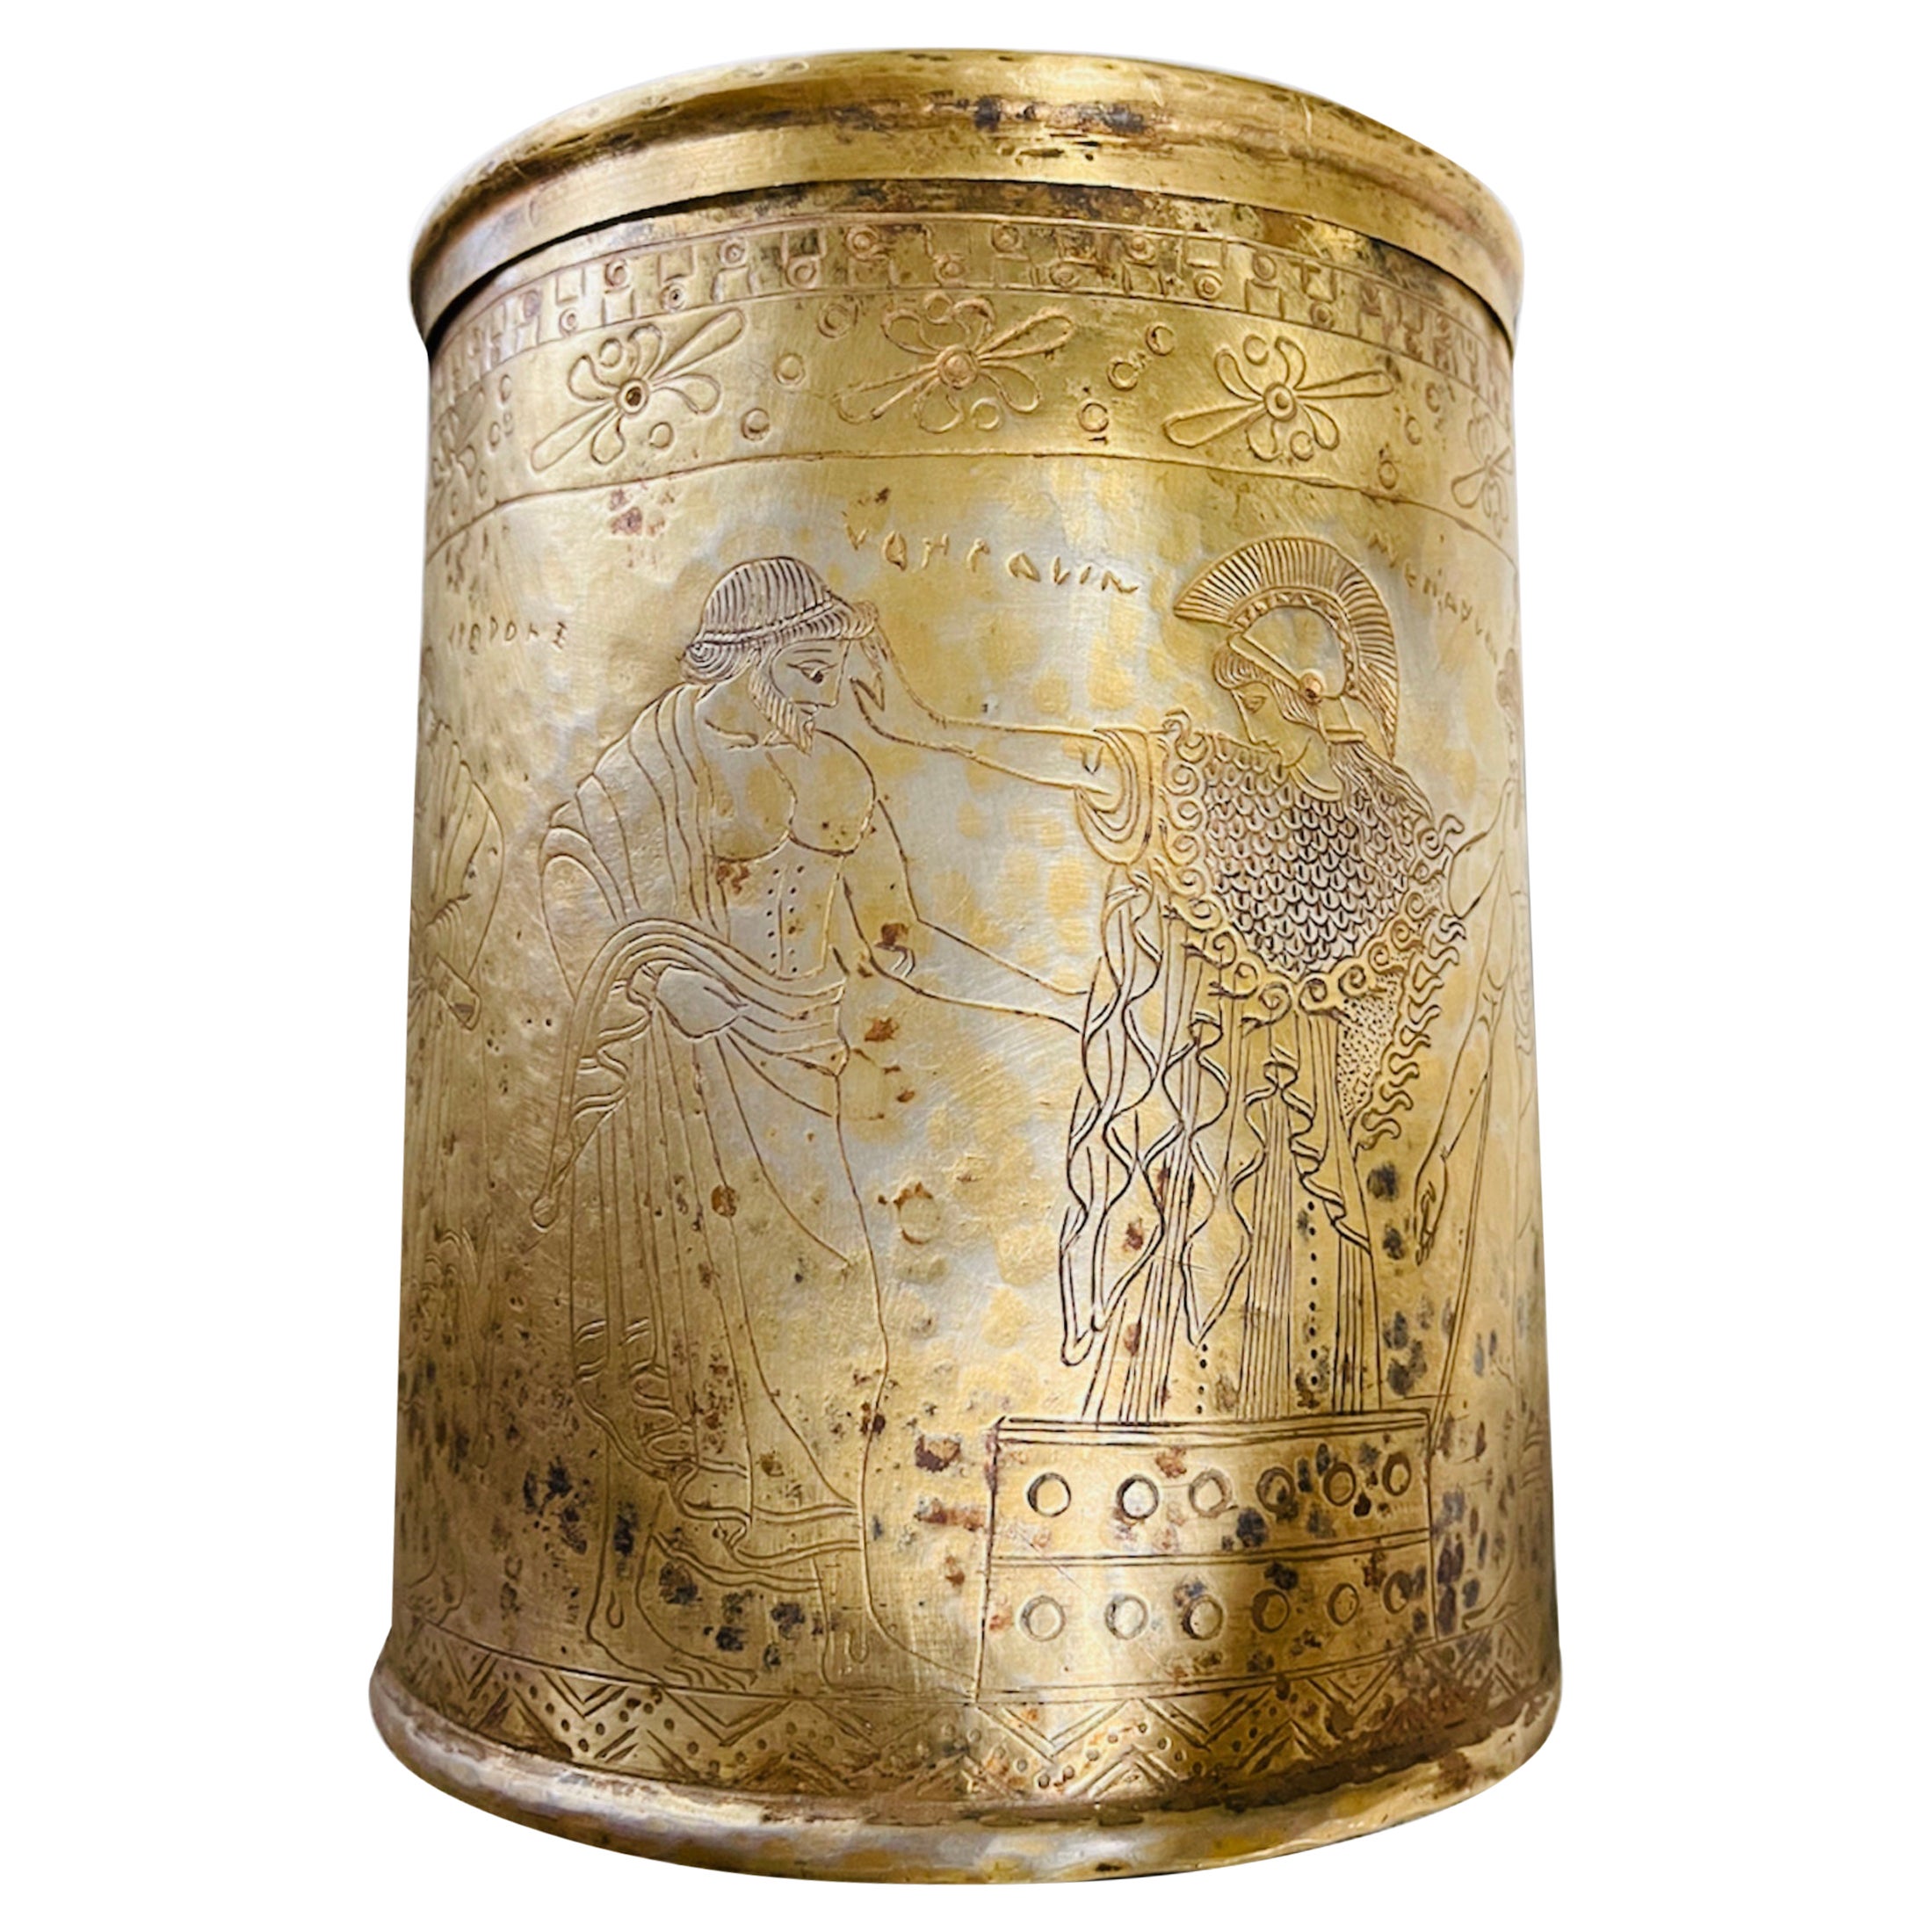 Grand pyxique de style grec en métal gravé et ciselé de couleur or